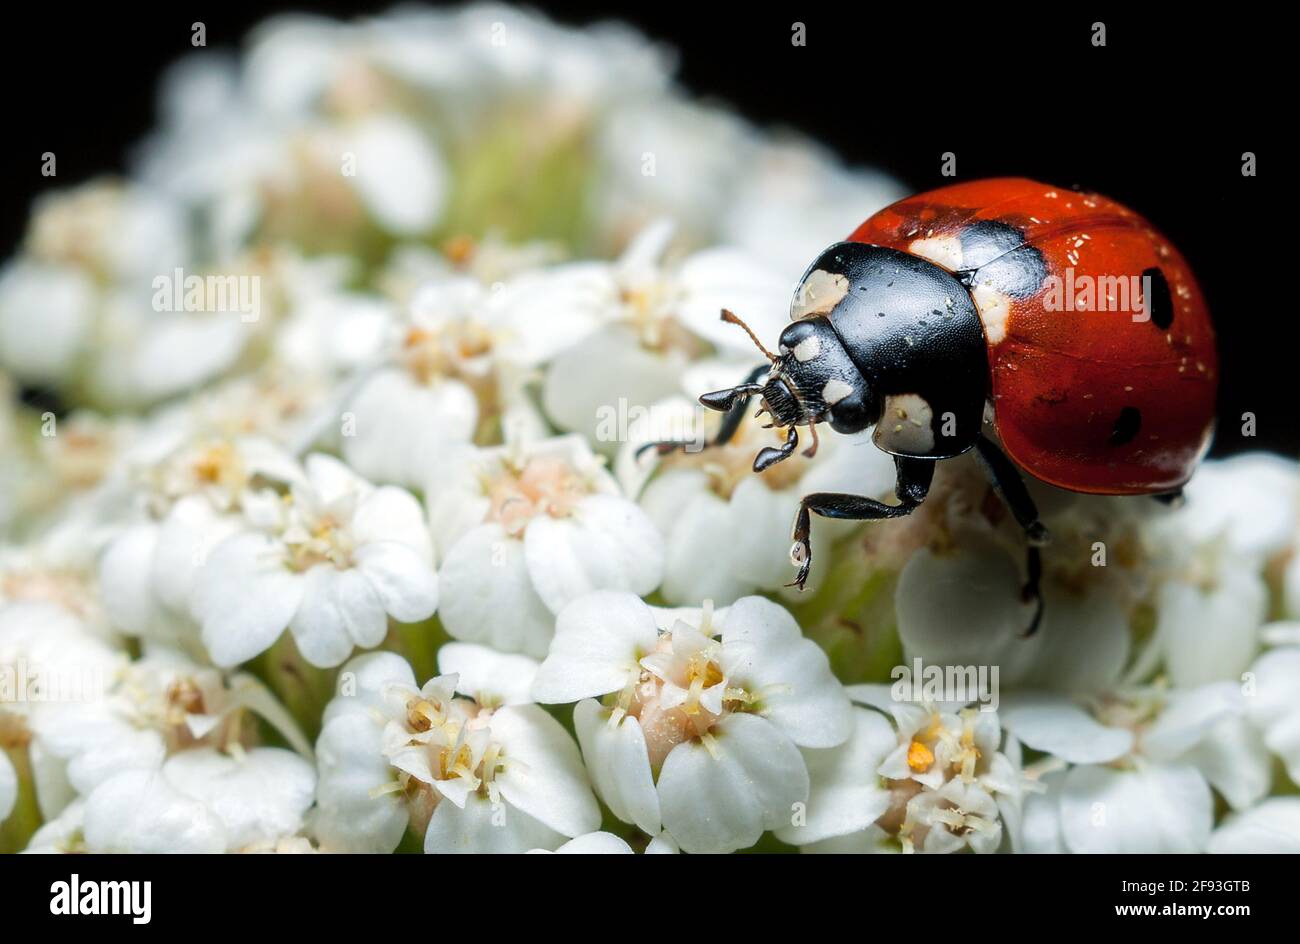 Der Käfer „marienkäfer“ sitzt auf einer weißen Blume, aufgenommen durch Makroaufnahmen auf schwarzem Hintergrund Stockfoto